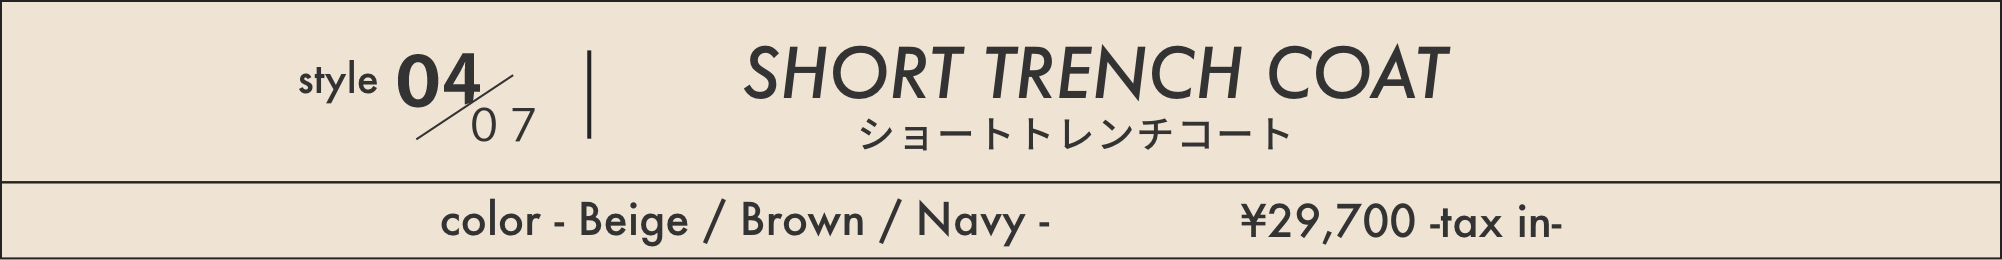 style04/07 SHORT TRENCH COAT ショートトレンチコート color - Beige / Brown / Navy - ¥29,700 -tax in-